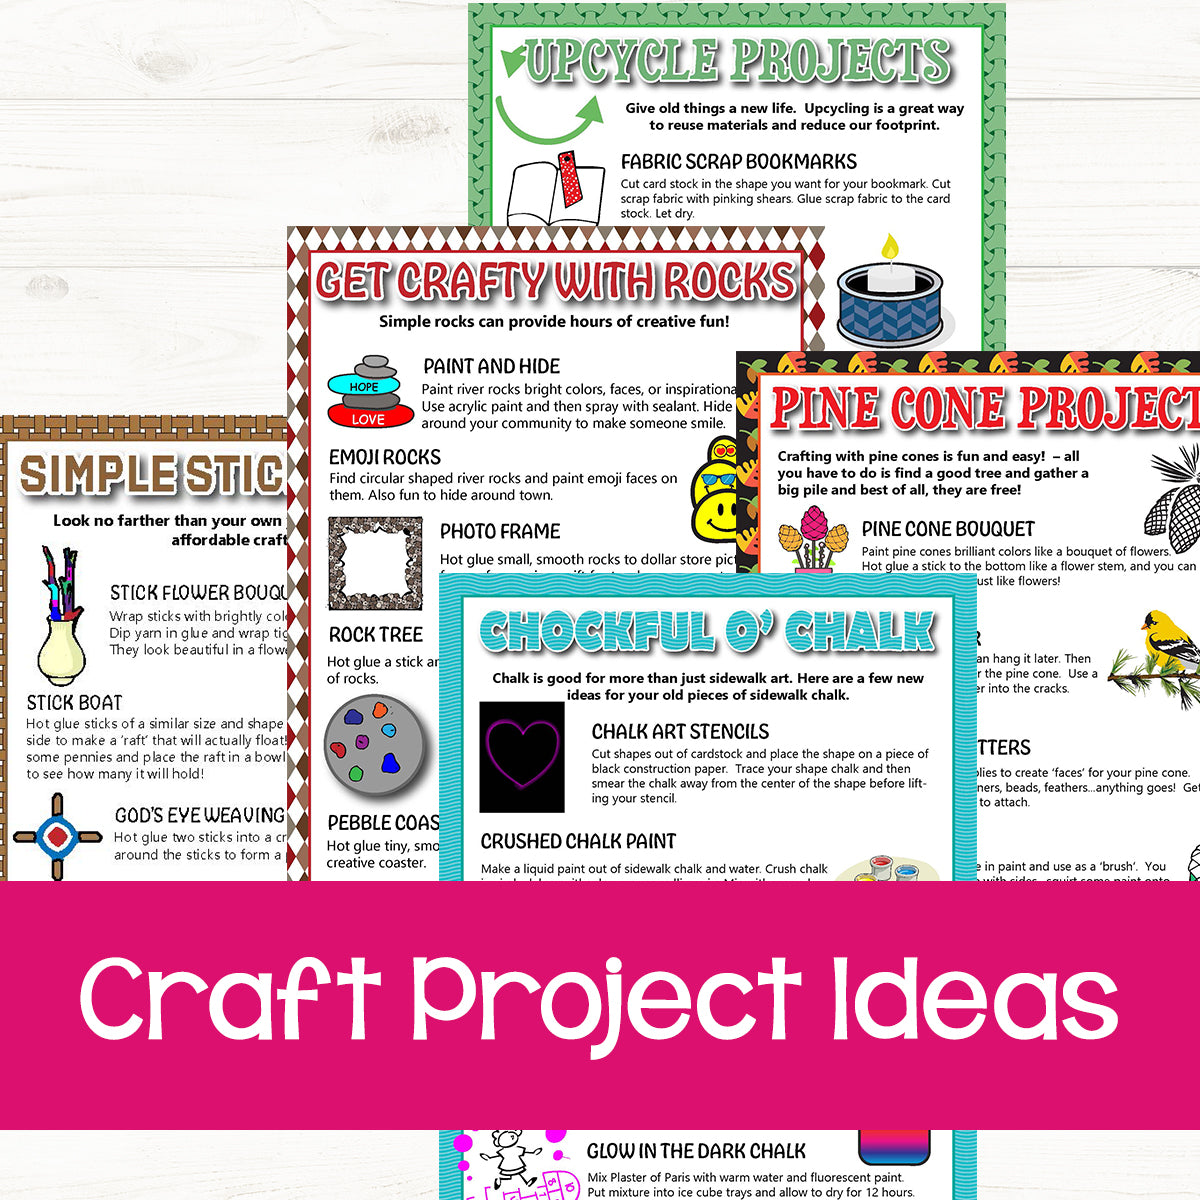 Craft Spot! Arts & Crafts Supplies for Kids (1200)